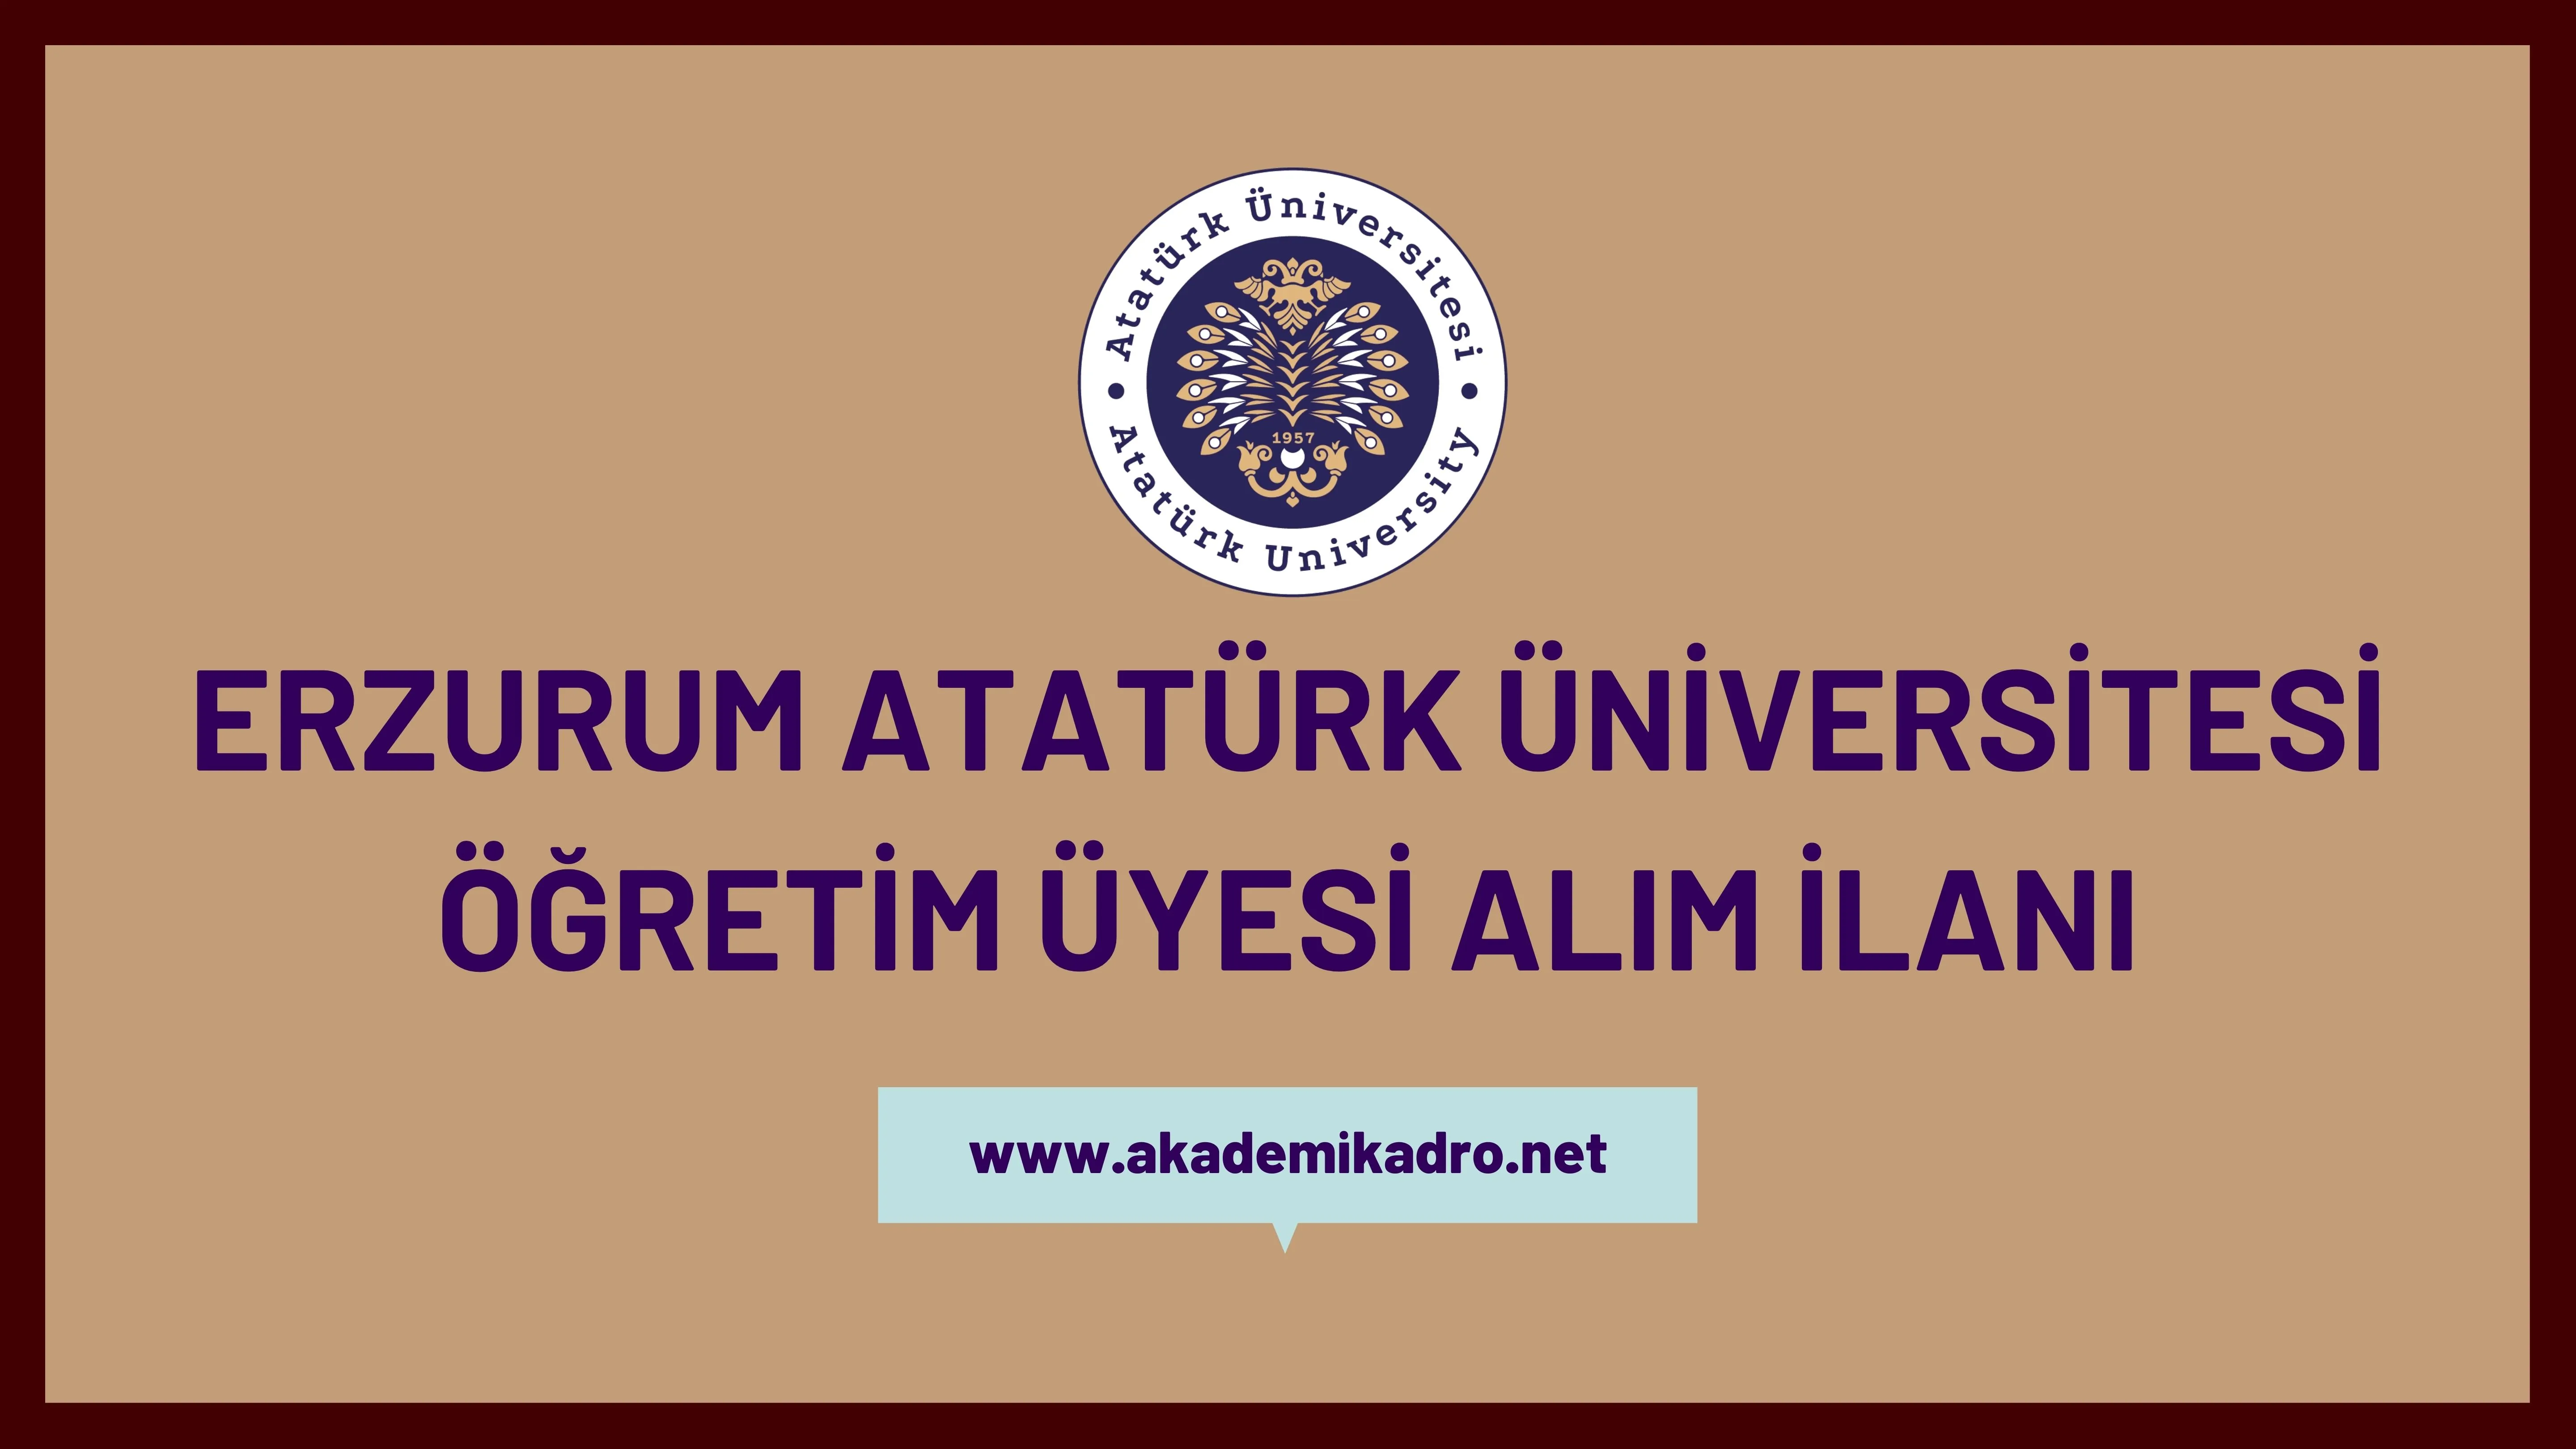 Atatürk Üniversitesi 4 öğretim üyesi alacak.